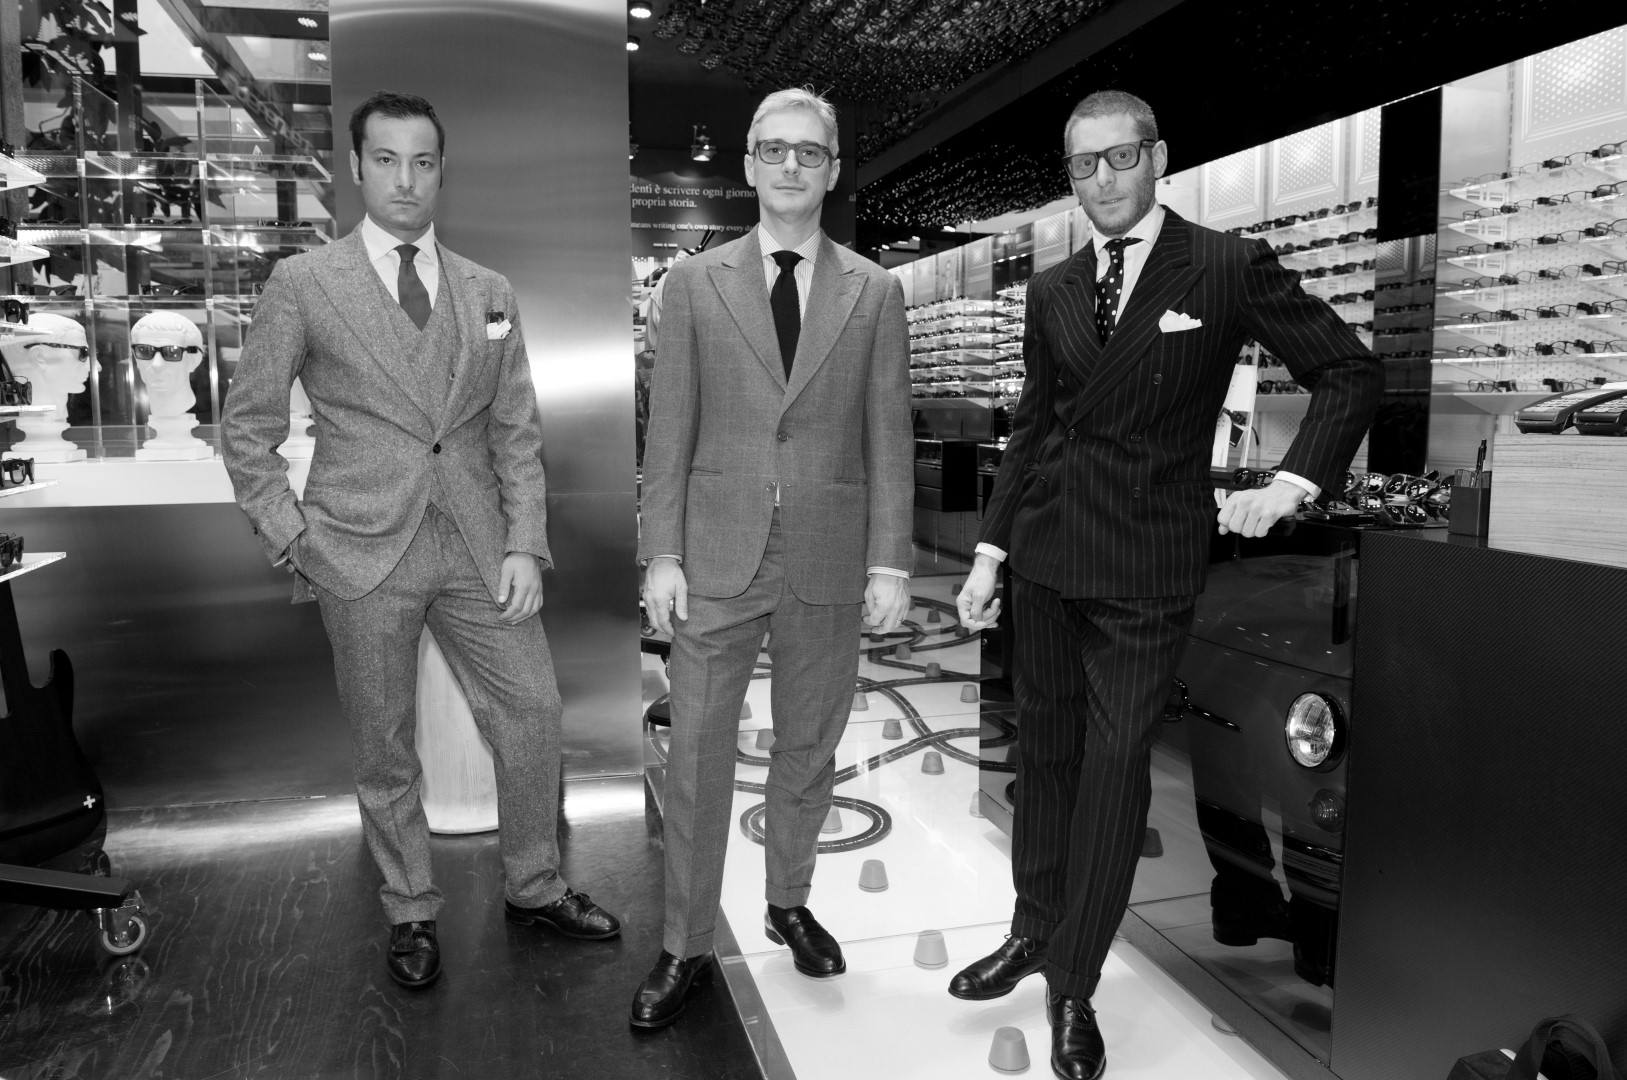 Italia Independent occhiali autunno inverno 2015 2016: la nuova finitura Glossy e la nuova collezione eyewear adidas Originals